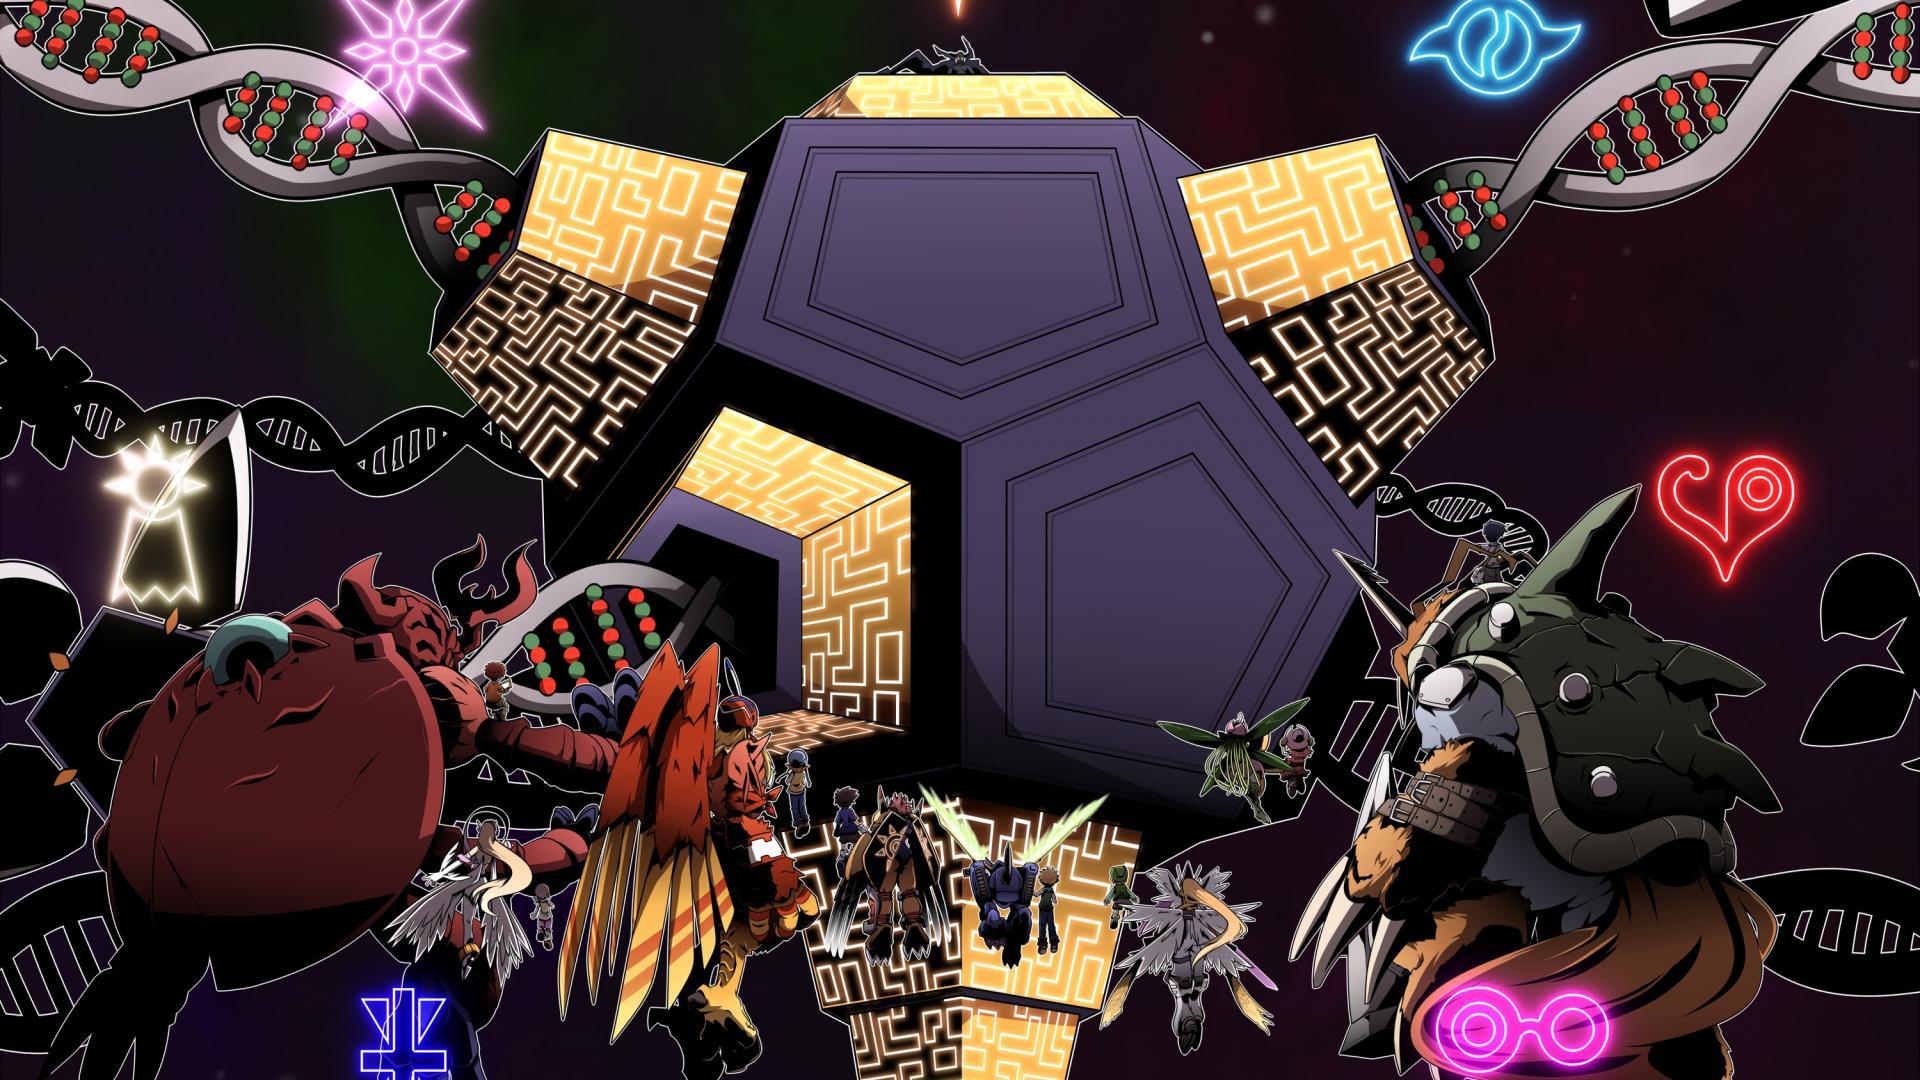 Digimon angewomon wargreymon metalgarurumon wallpapers